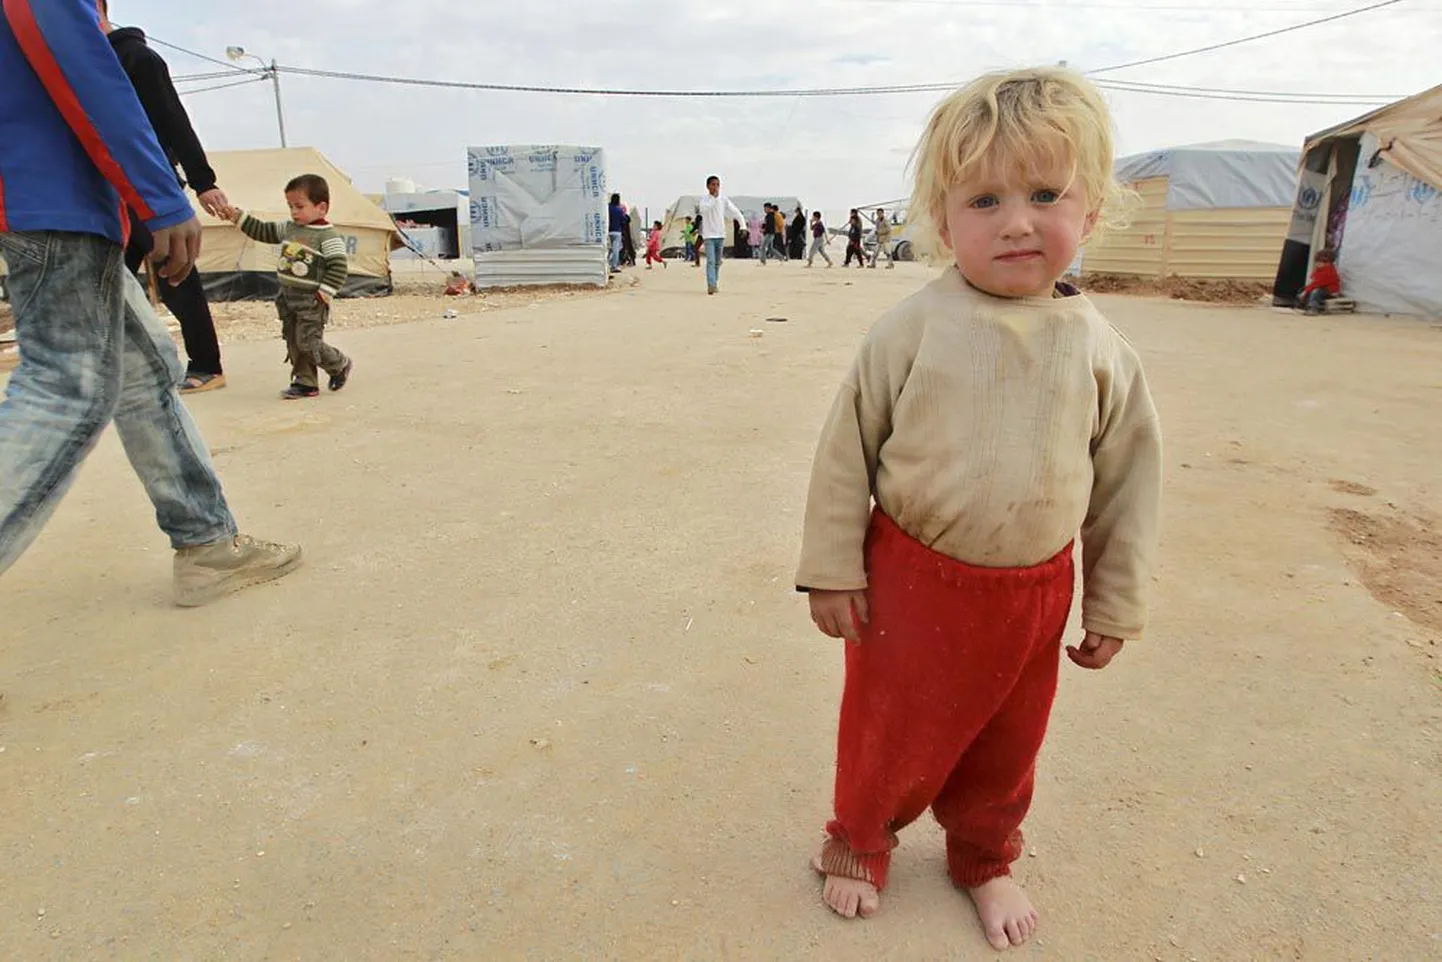 Tüüpiline praeguste päevade pagulane, süüria poiss Al-Zaatri põgenikelaagris Jordaanias Mafraqi linna lähedal. Kuigi need inimesed vajavad kaitset ELile suhteliselt lähedal, ei liigu suurem osa sadadest tuhandetest sõja eest pagenud süürlastest kaugemale kodumaa piiri äärde püstitatud telklaagritest Türgis või Jordaanias.